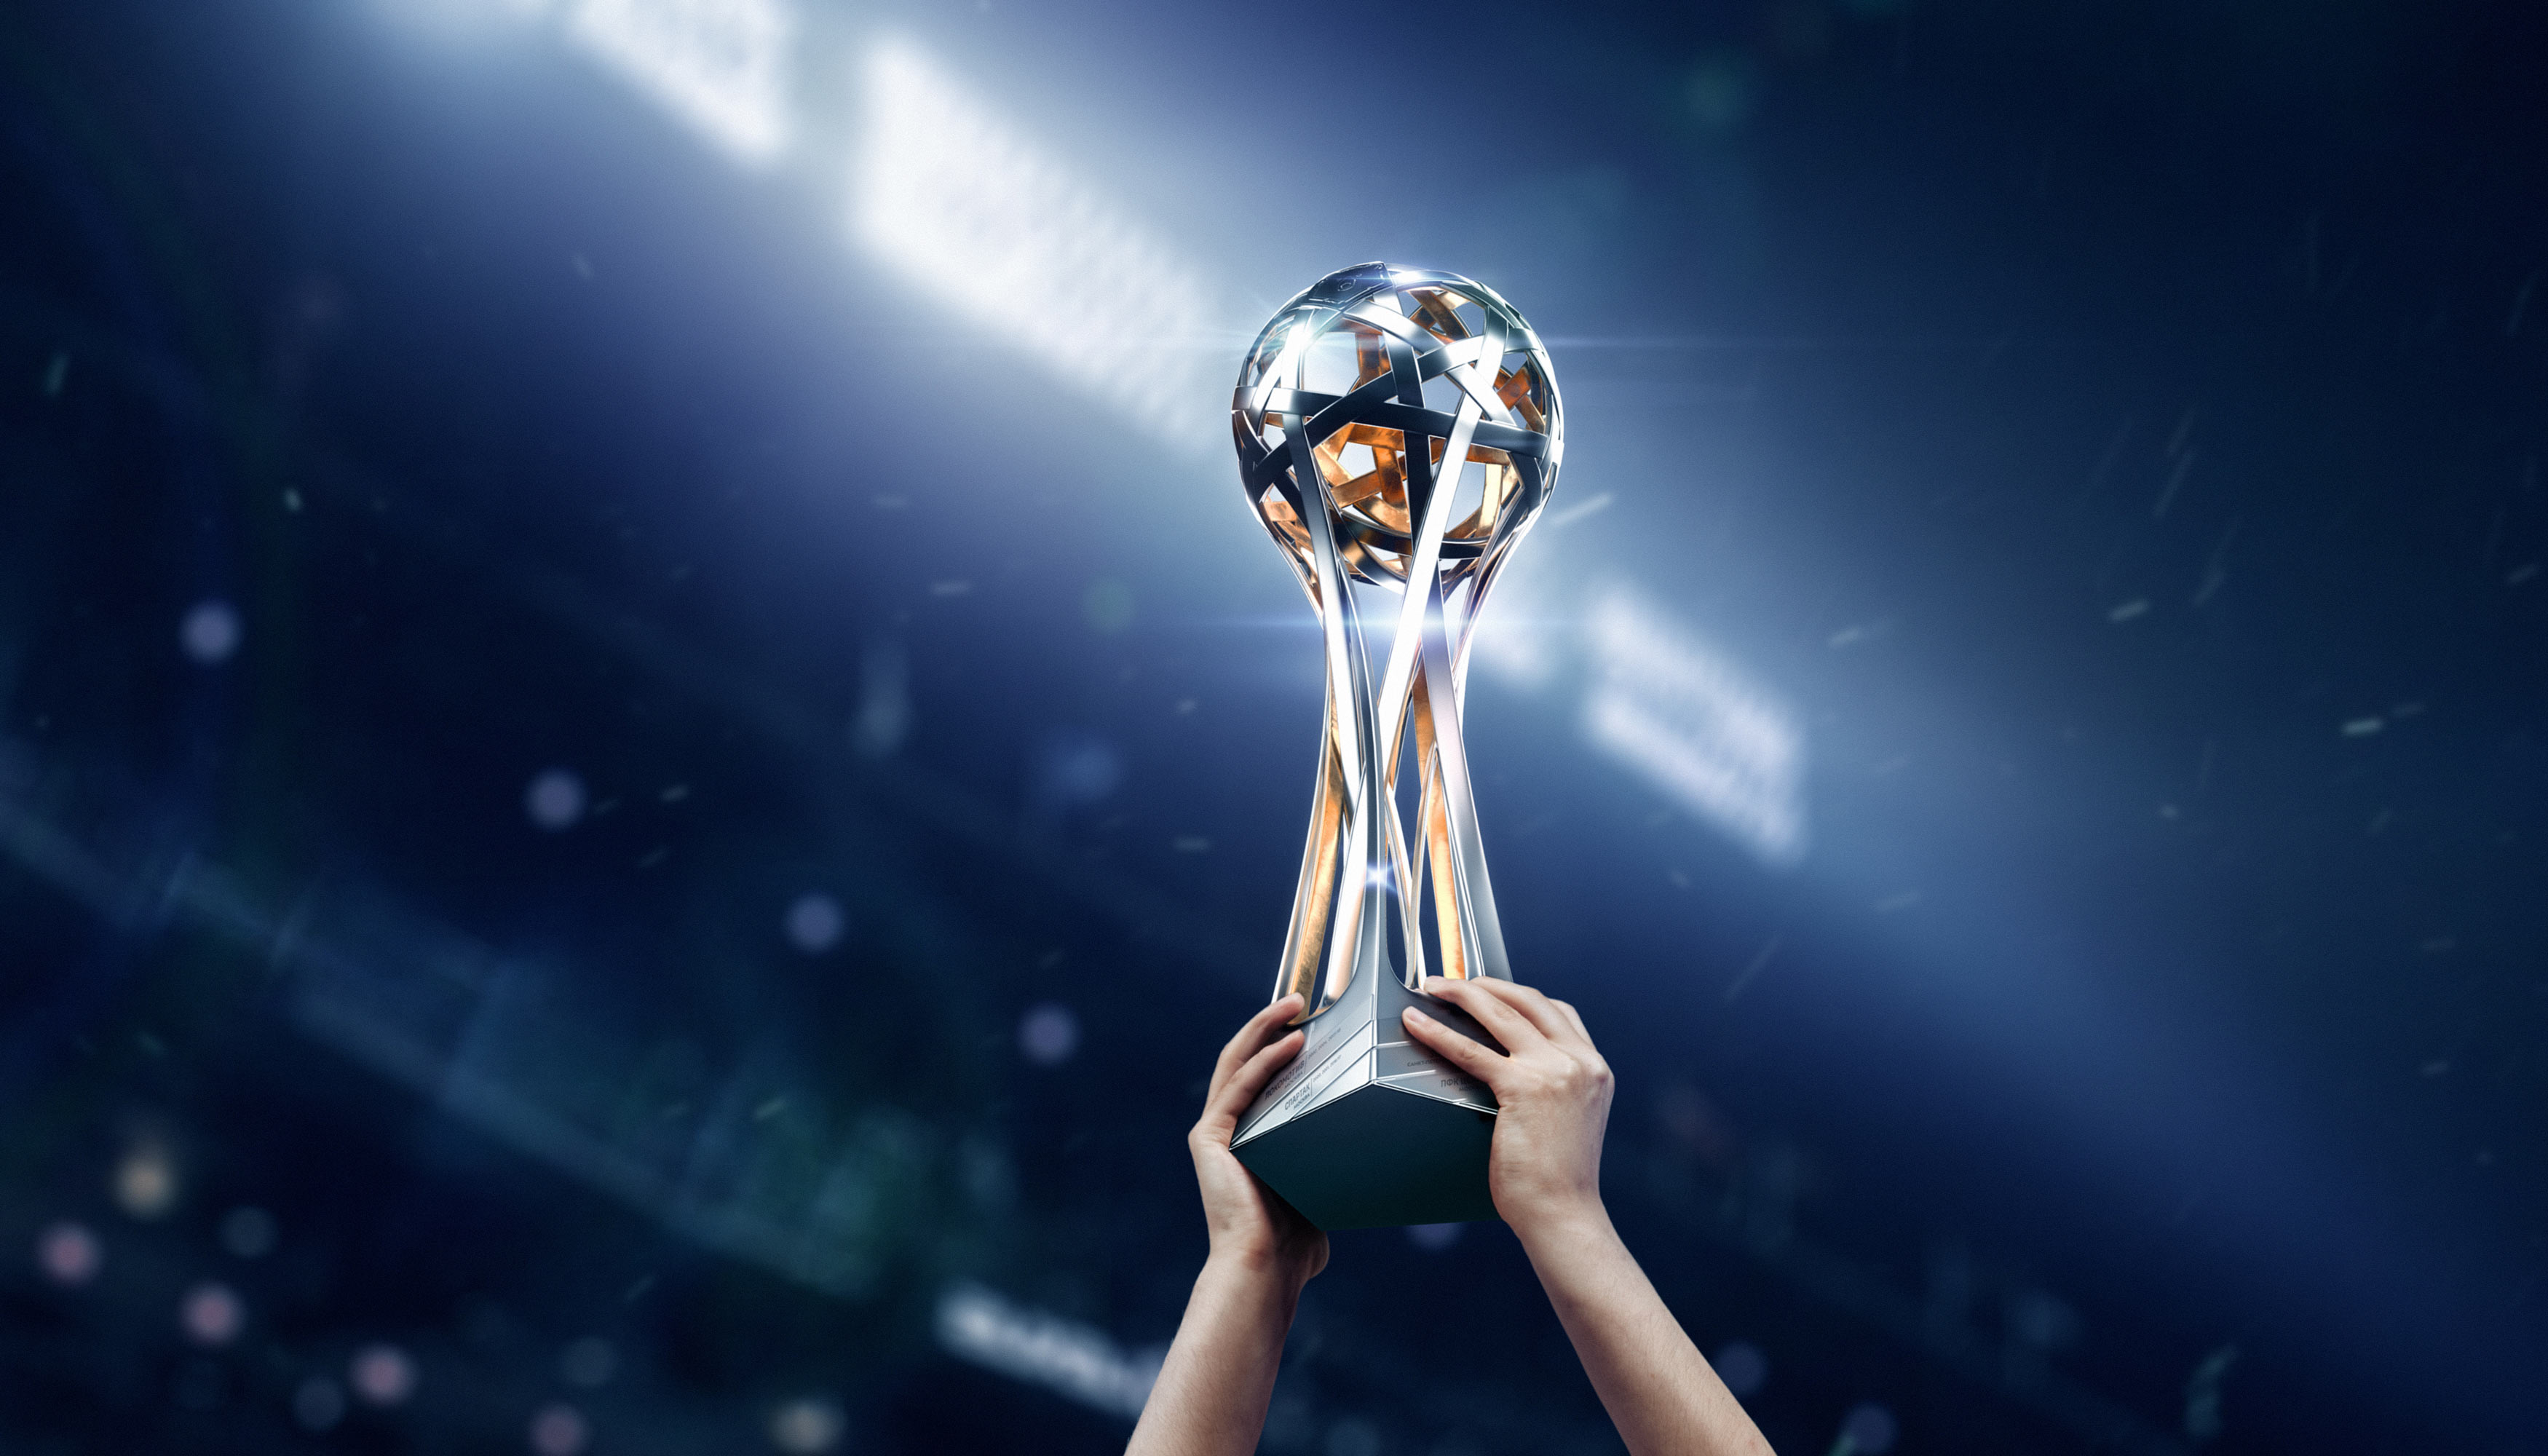 Troféus do Futebol: Campeonato Russo - Russian Premier League